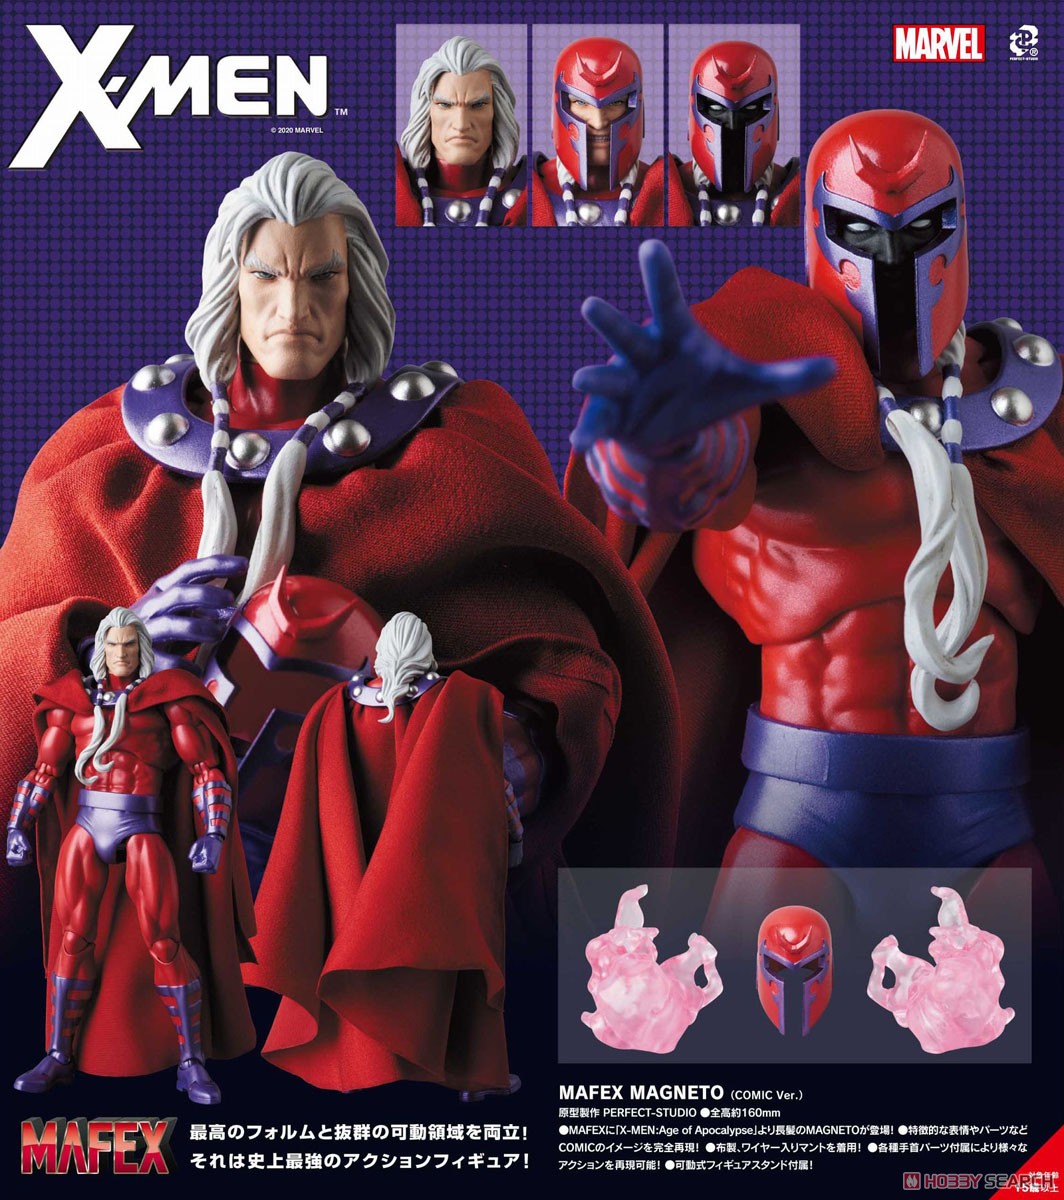 【X-MEN】マフェックス『マグニートー コミック版/MAGNETO COMIC Ver.』可動フィギュア【メディコム・トイ】より2020年